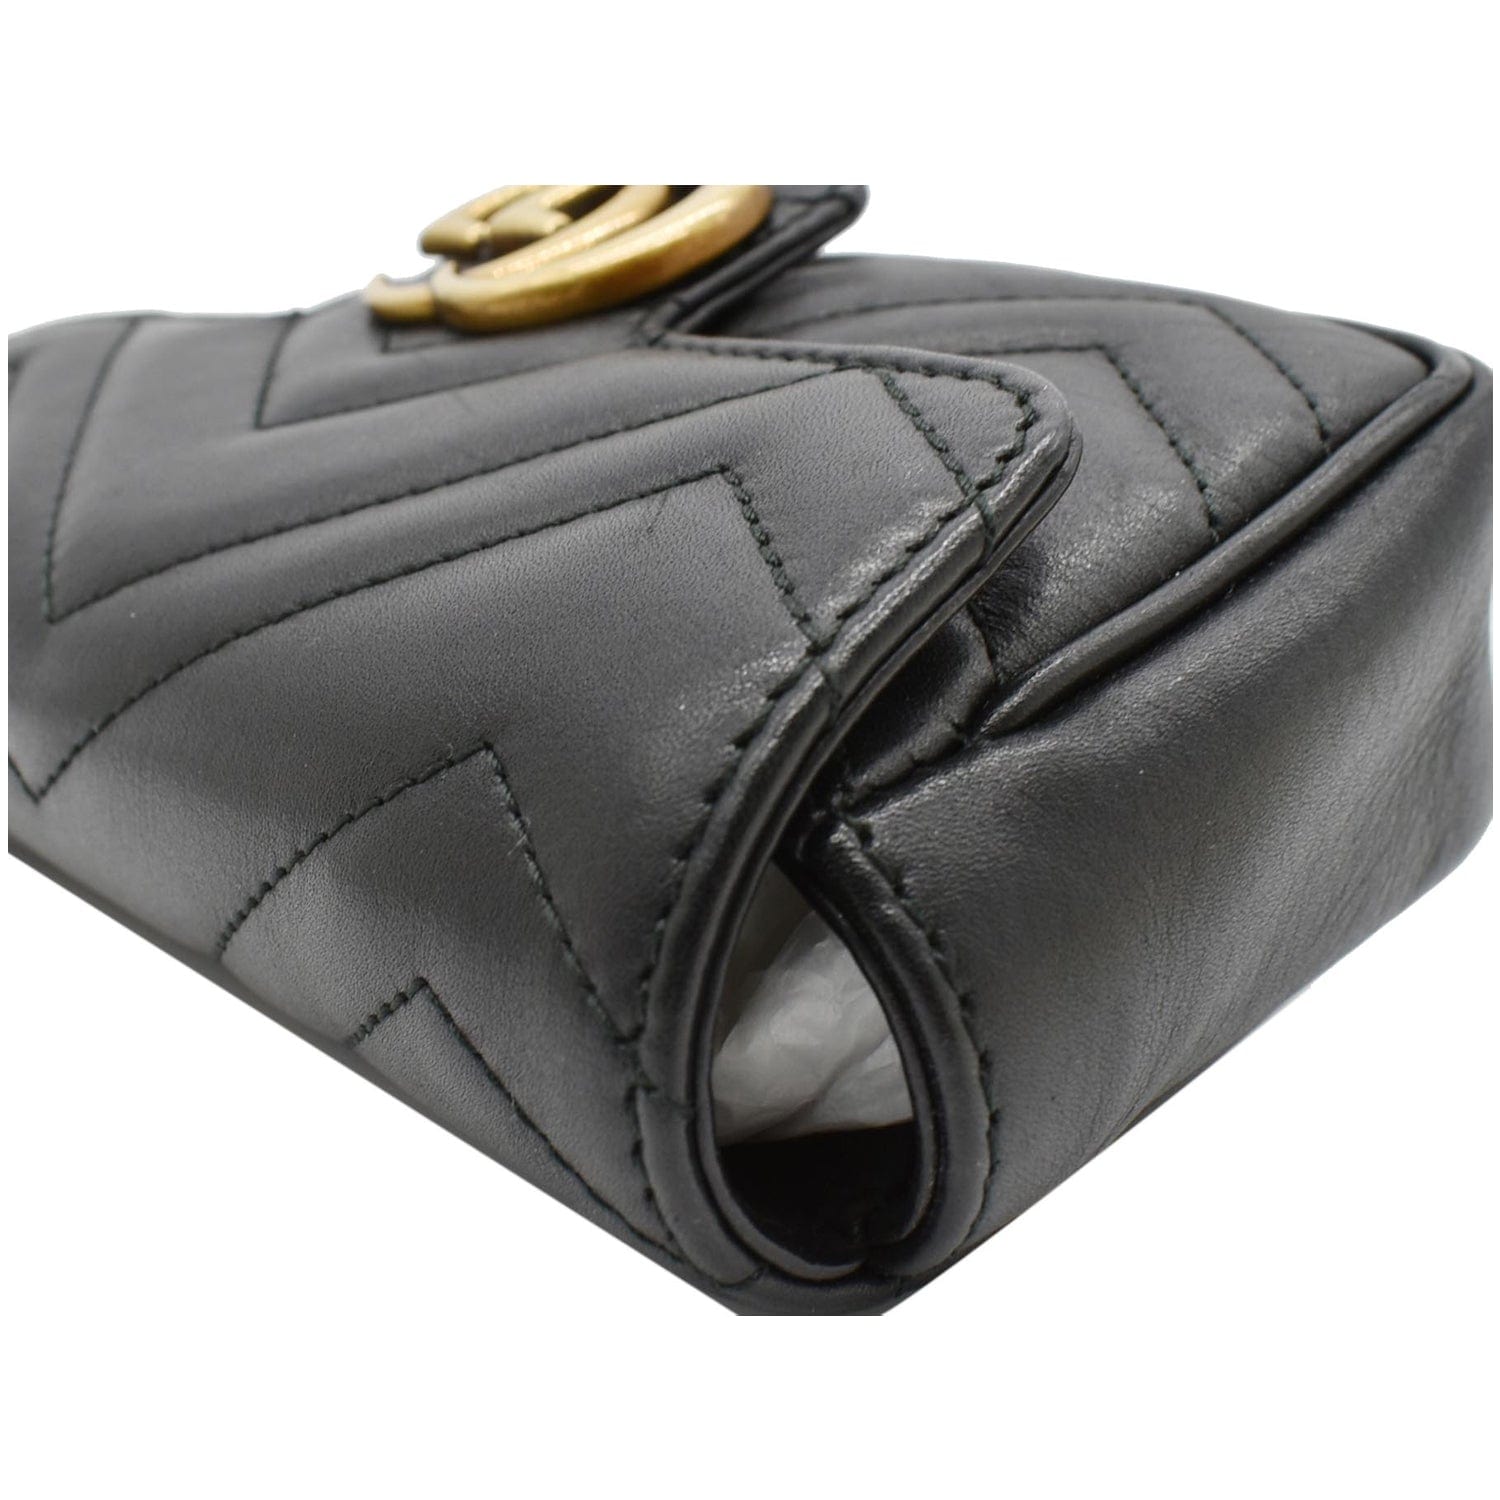 GG Matelassé mini bag in black leather